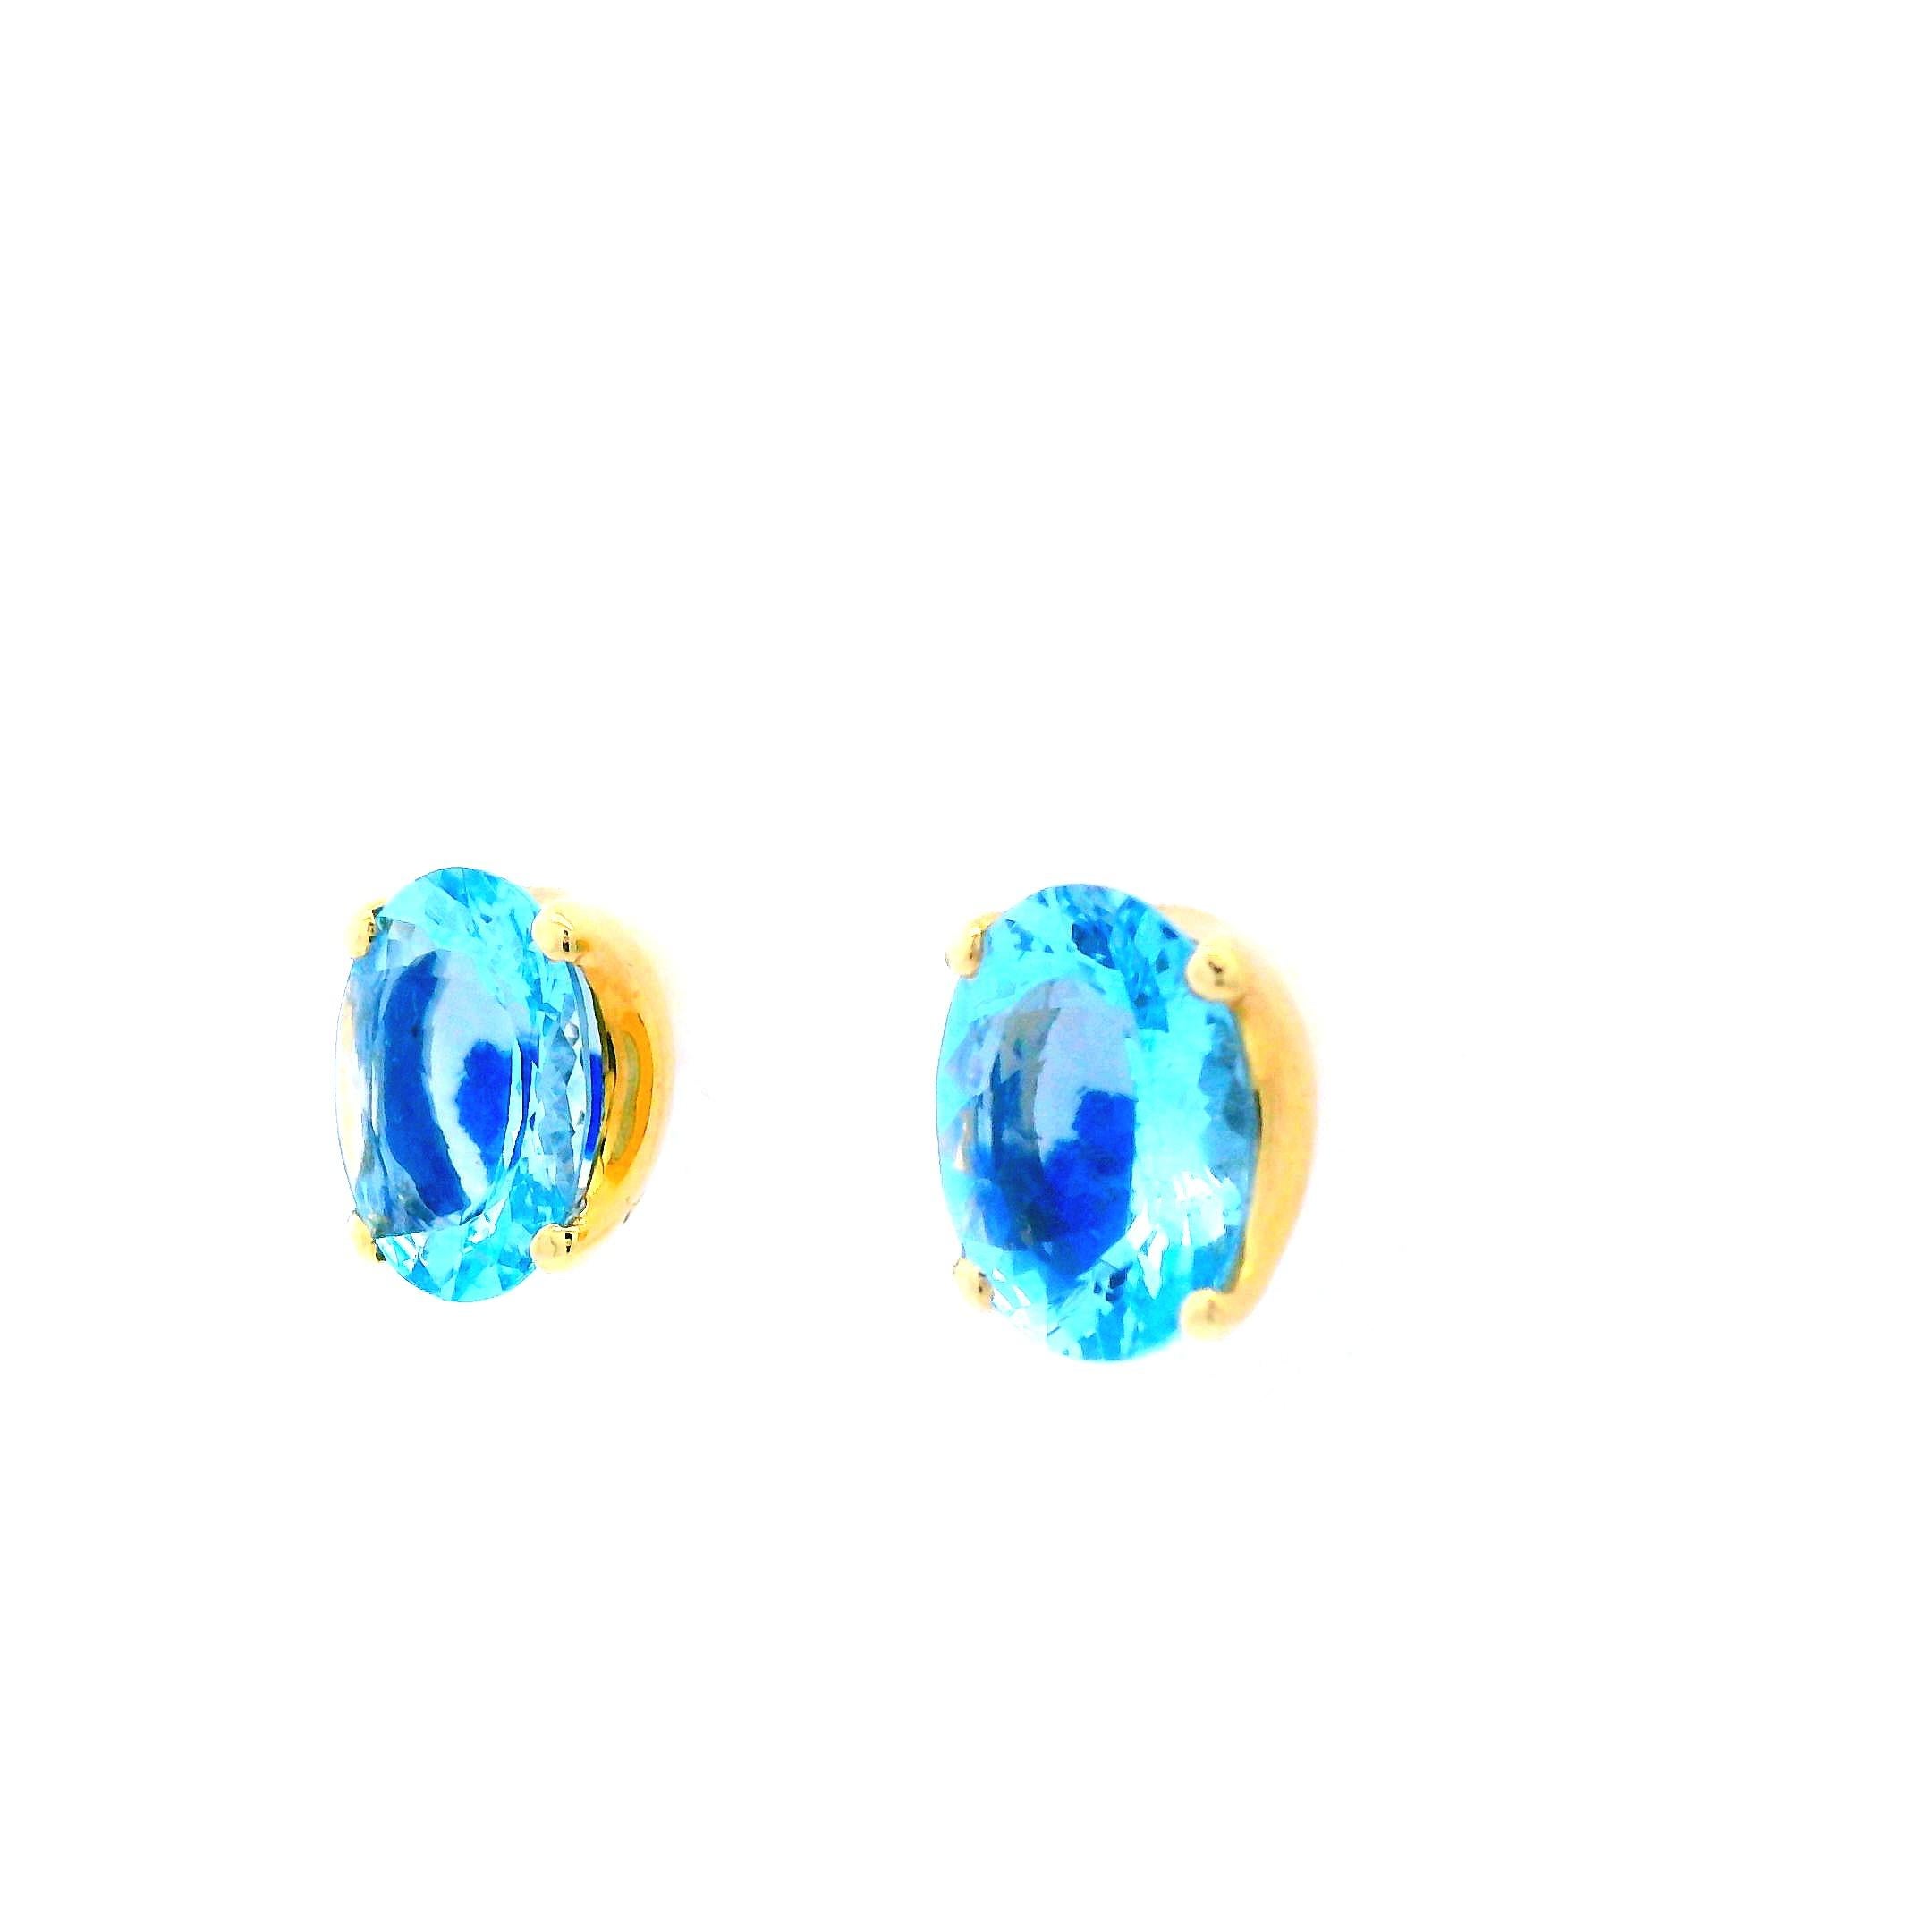 Dieses schöne Paar Ohrringe ist ein Paar H. Stern 18k Gelbgold Aquamarin-Ohrstecker. Diese feinen Ohrringe haben zwei oval geschliffene Aquamarine, die jeweils mit einer vierzackigen Fassung aus 18 Karat Gelbgold versehen sind. Der subtile Hauch von